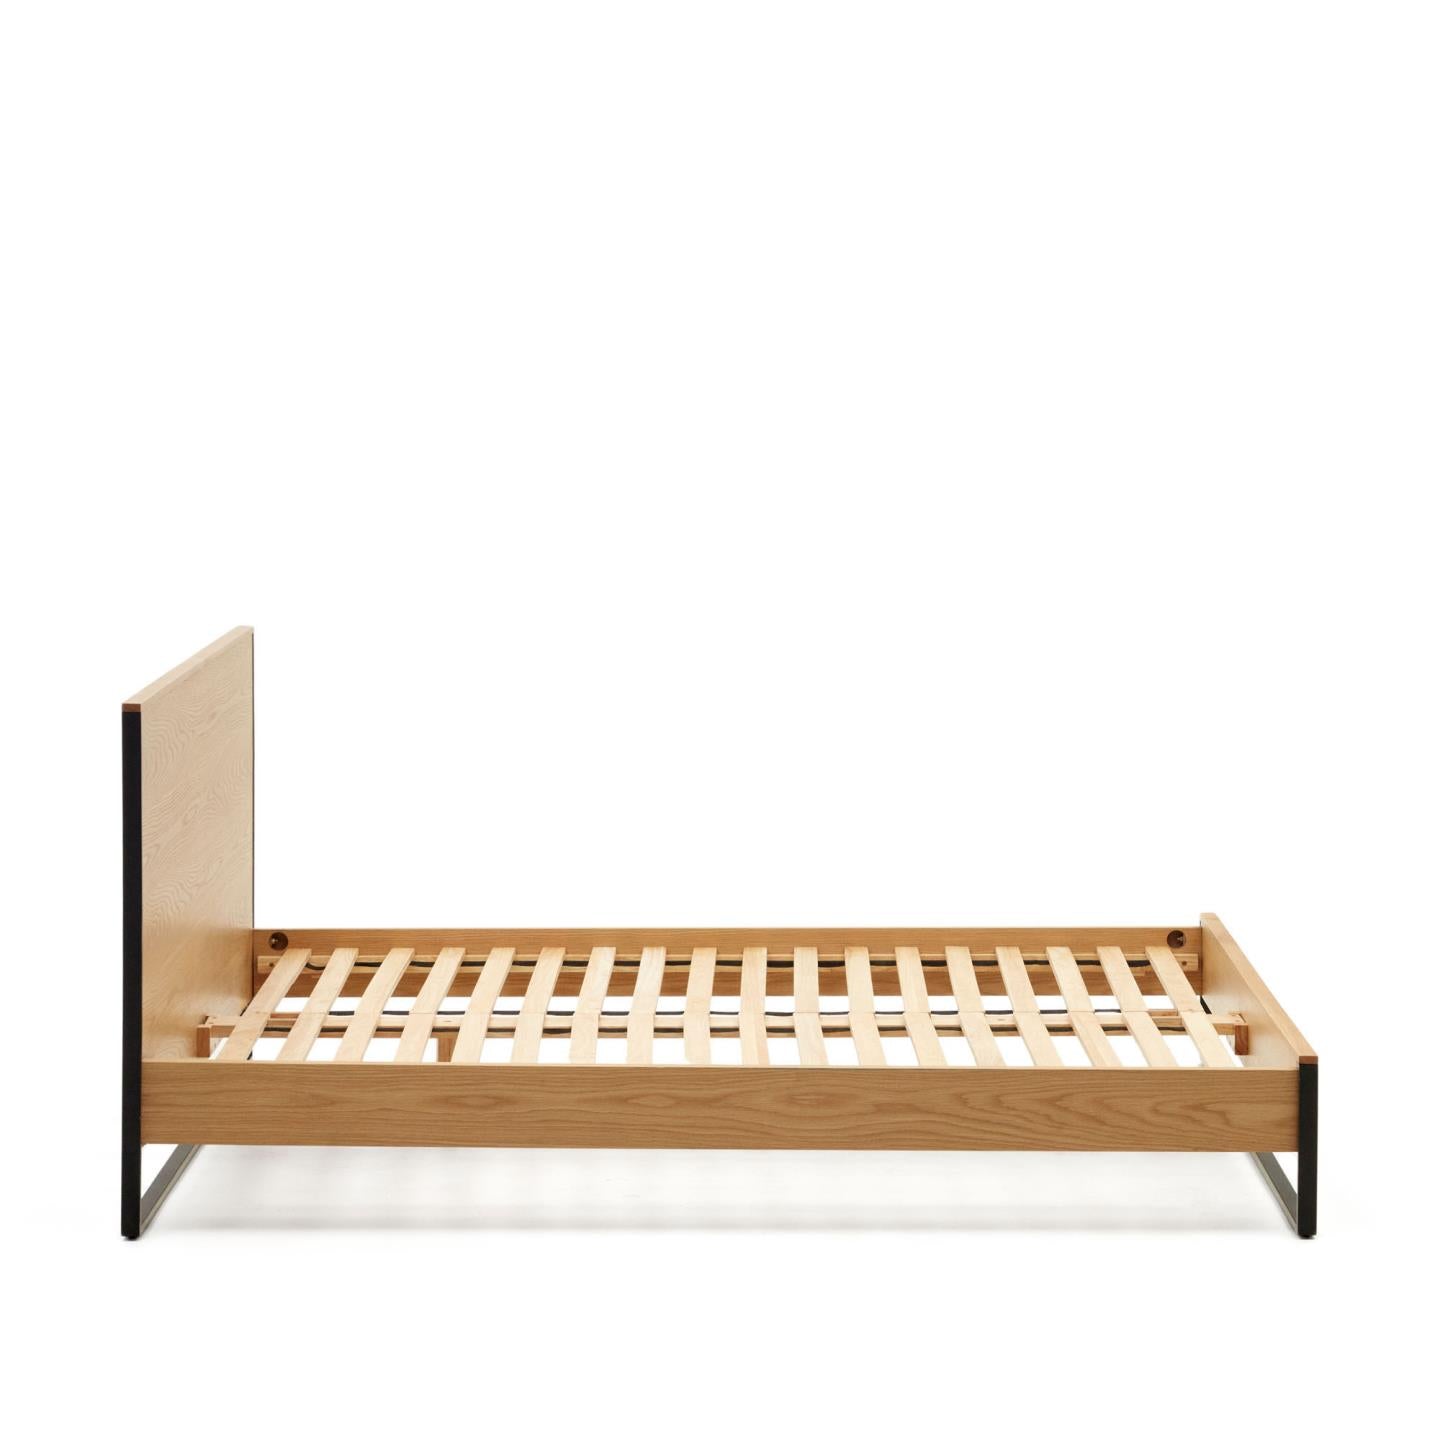 Taiana Oak Wood Veneer King Size Bed with Steel Legs